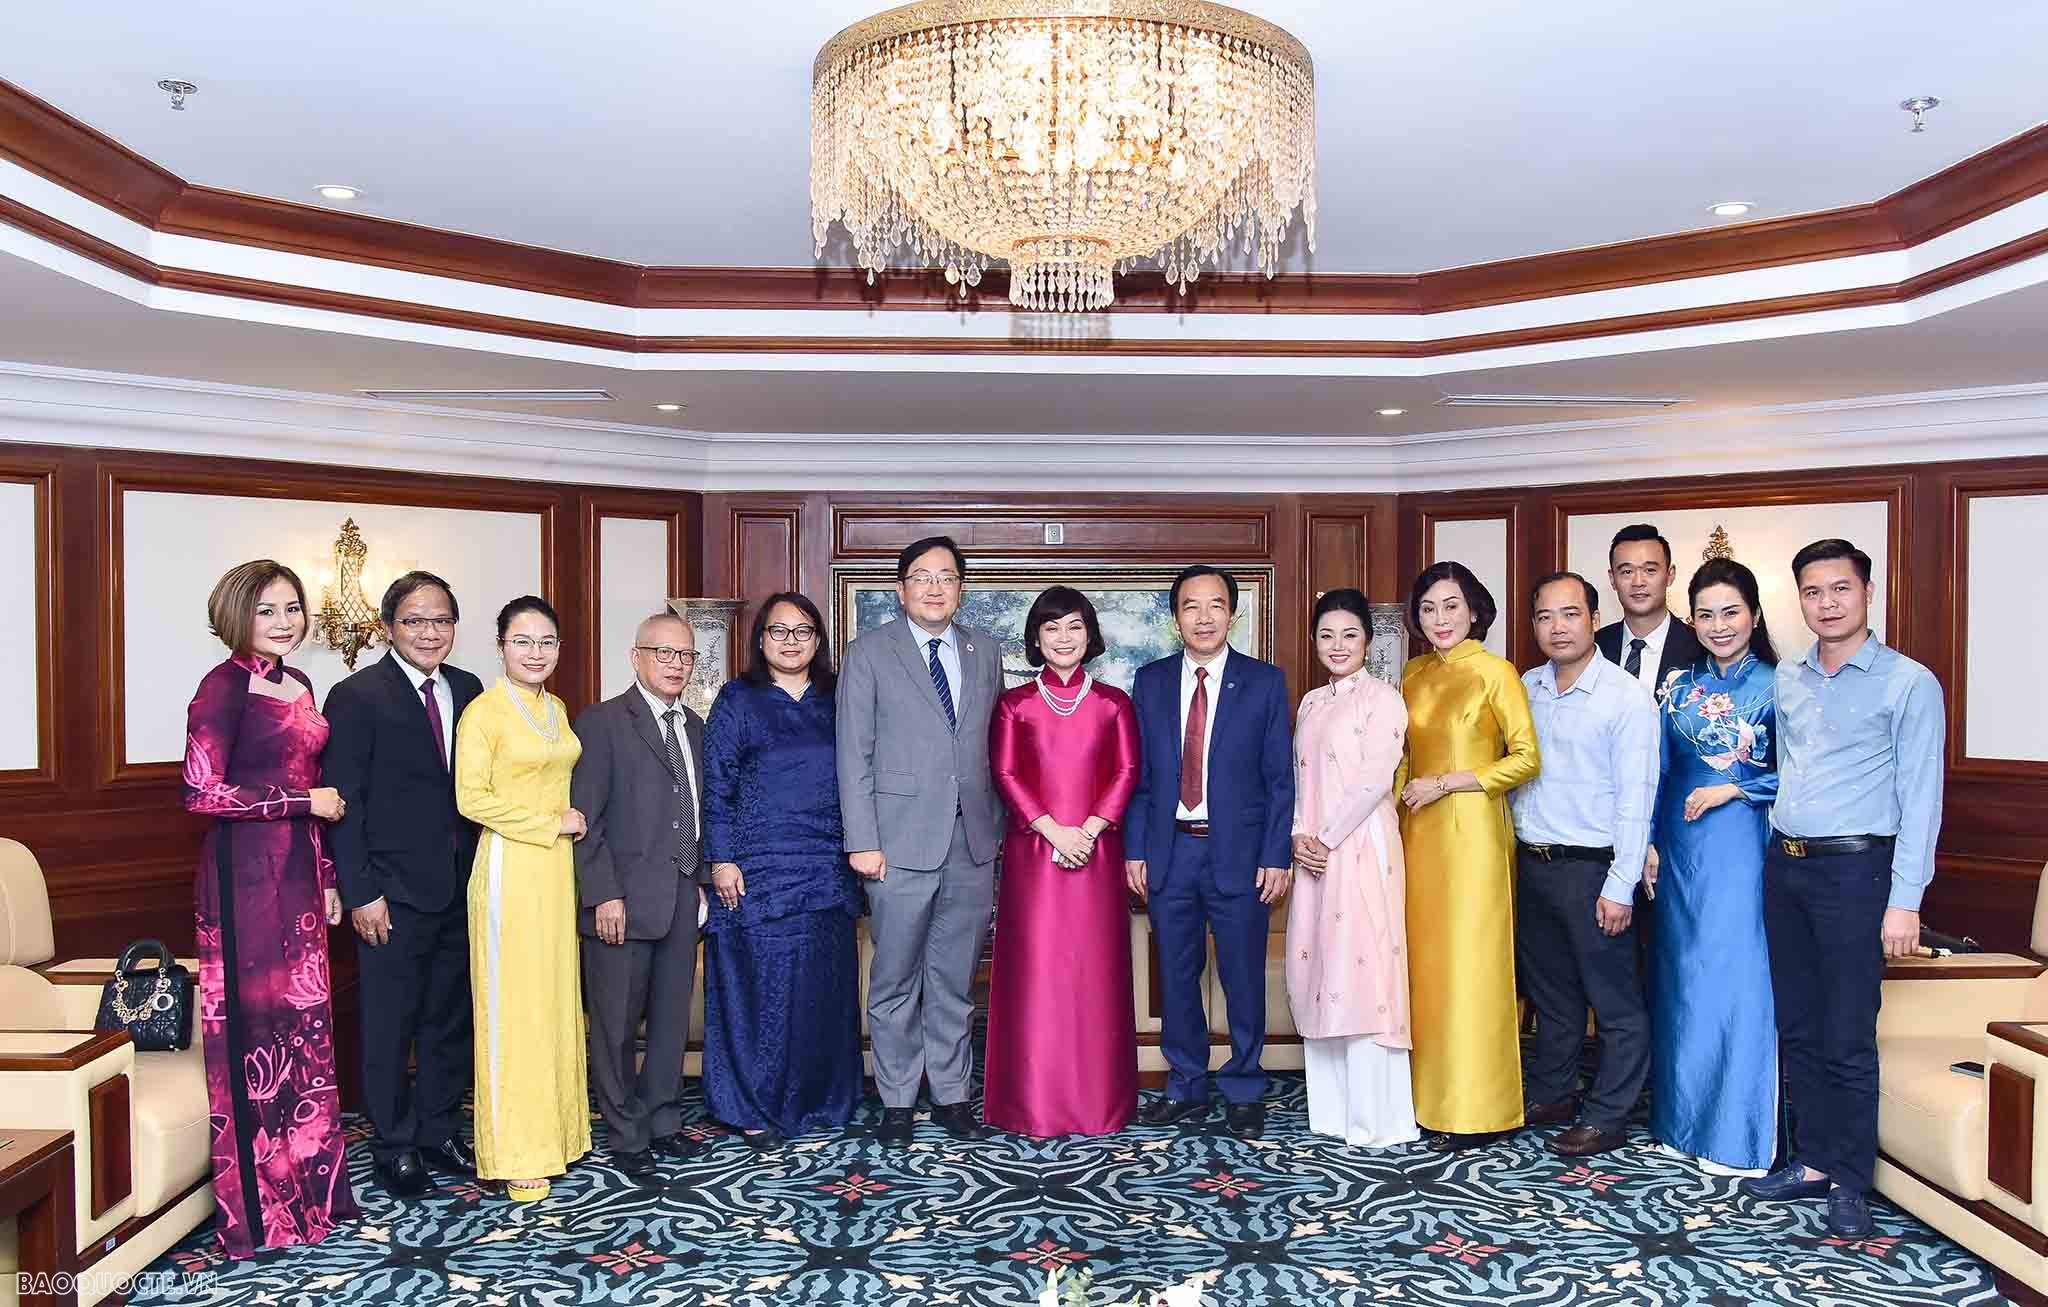 Hành trình Văn hóa-Thương mại Việt Nam-Malaysia: Hướng tới 50 năm phát triển thịnh vượng và gắn kết hơn